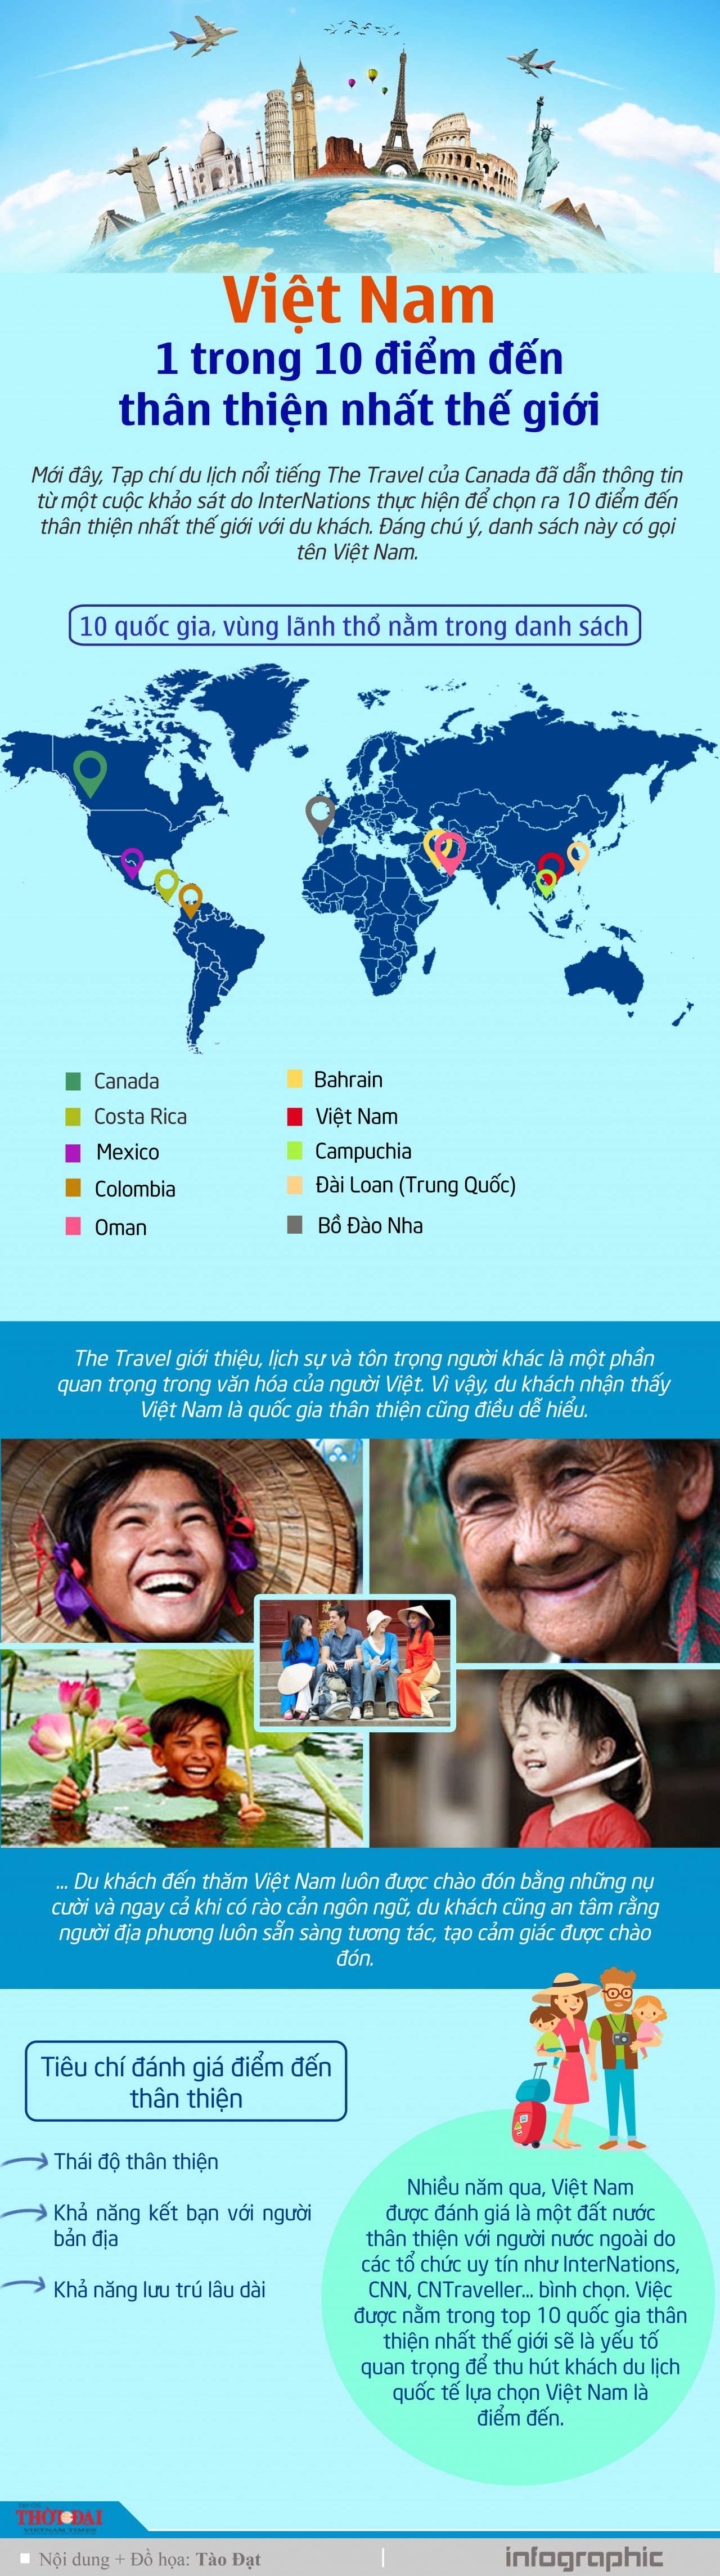 Infographic: Việt Nam là 1 trong 10 điểm đến thân thiện nhất thế giới